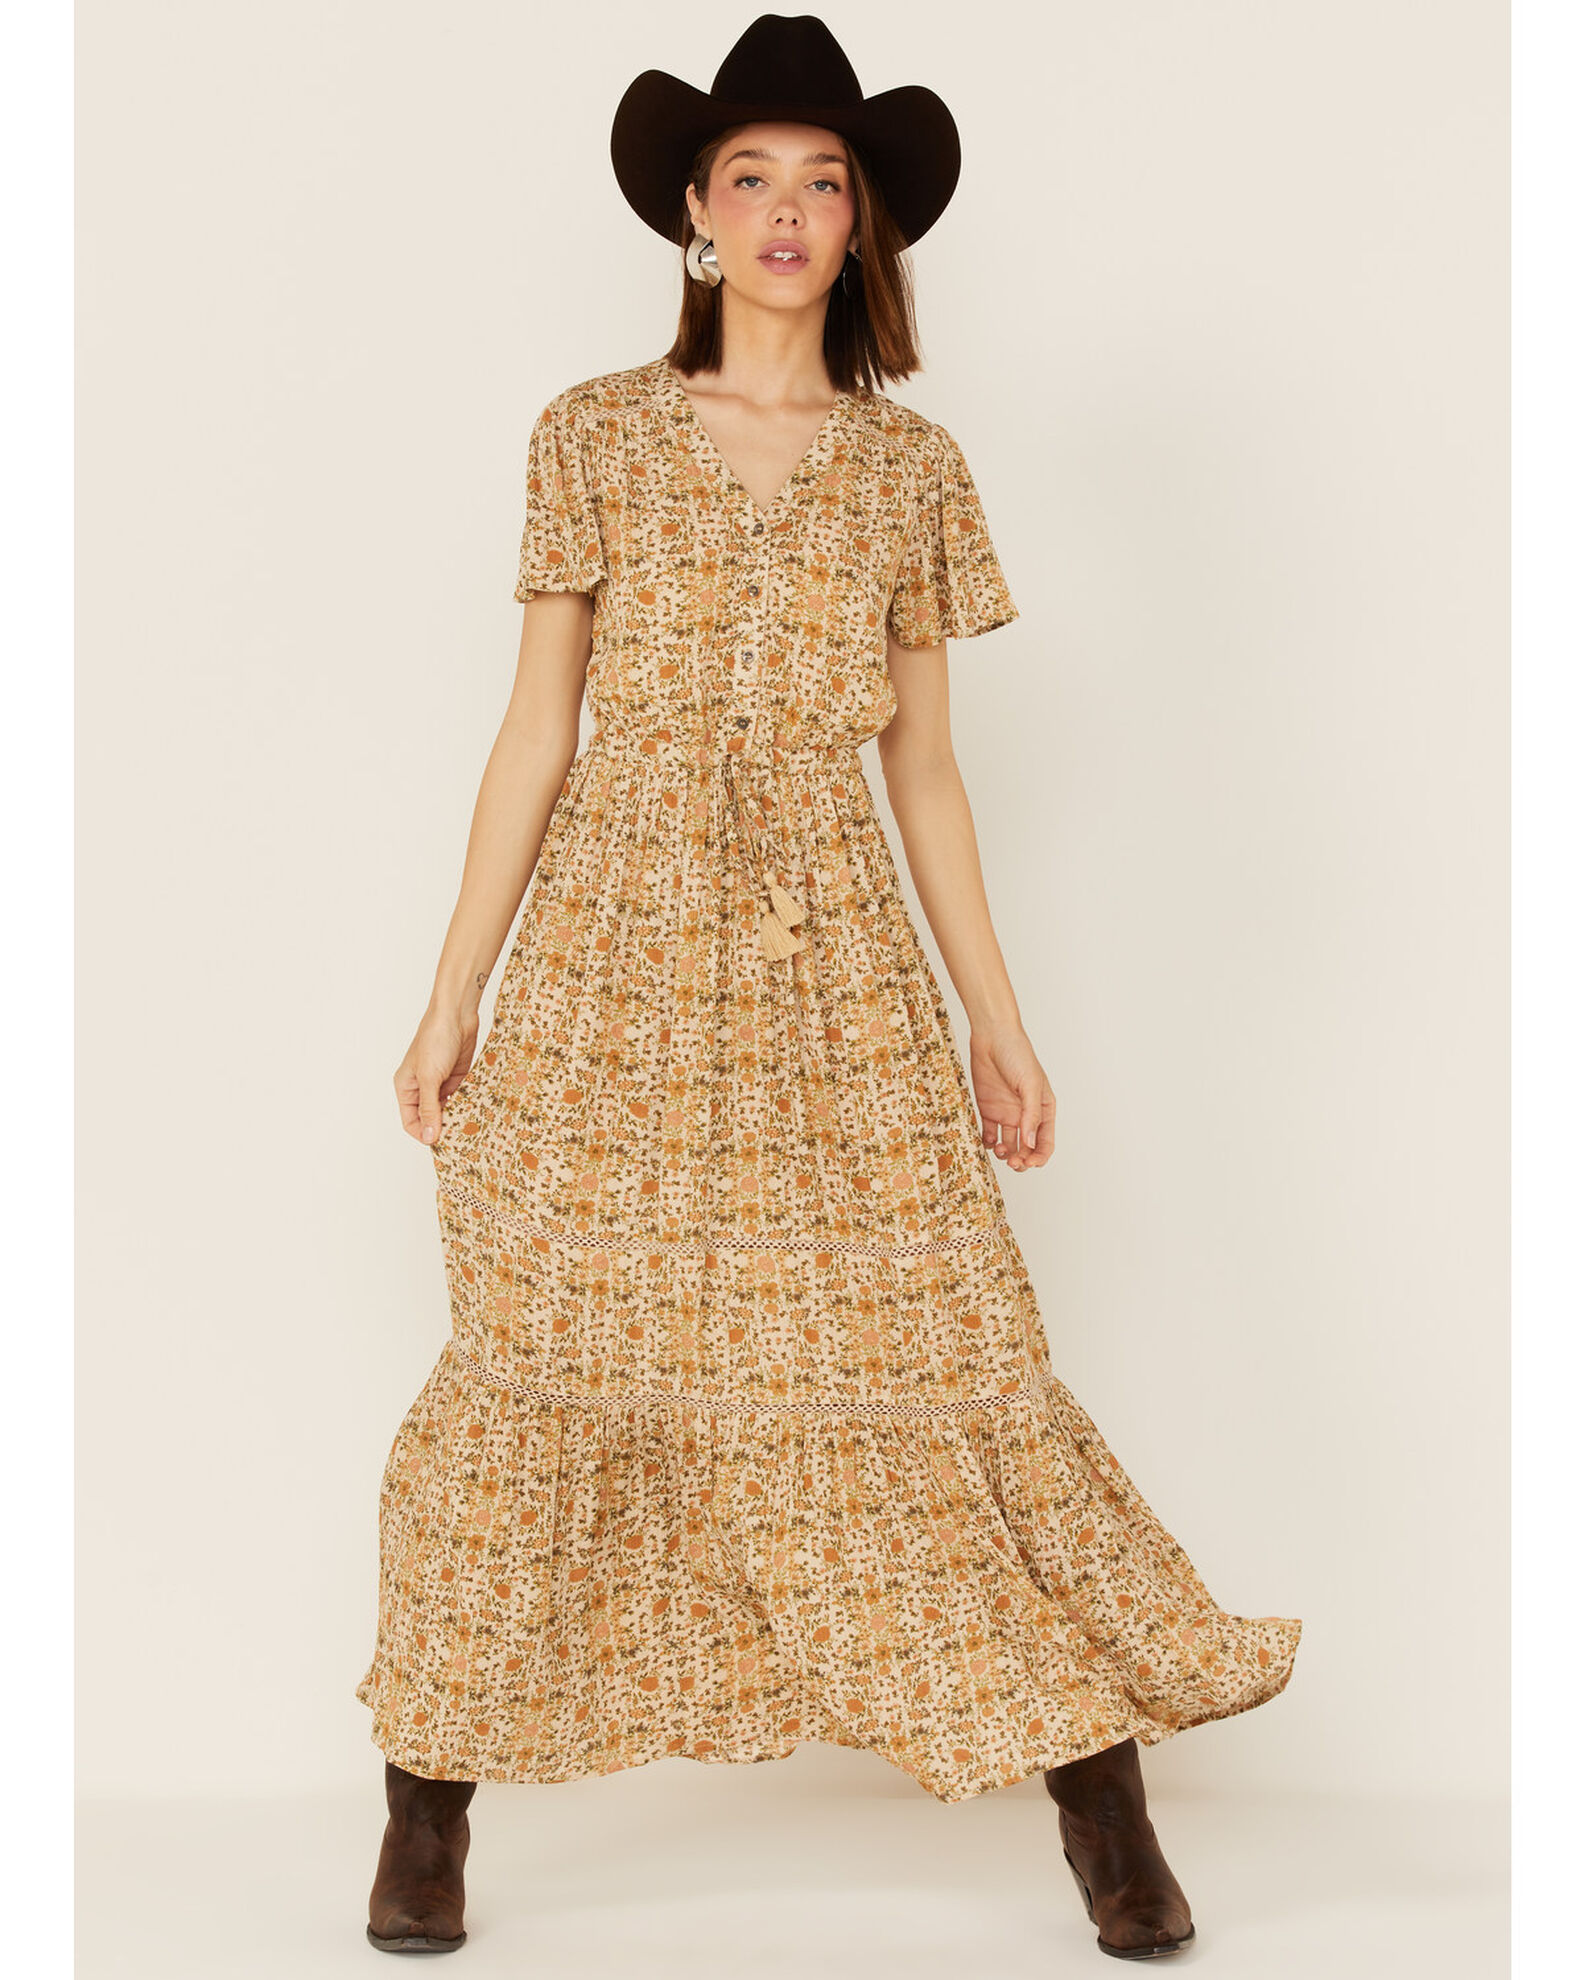 Cotton & Rye Women's Ditsy Floral Print Dress